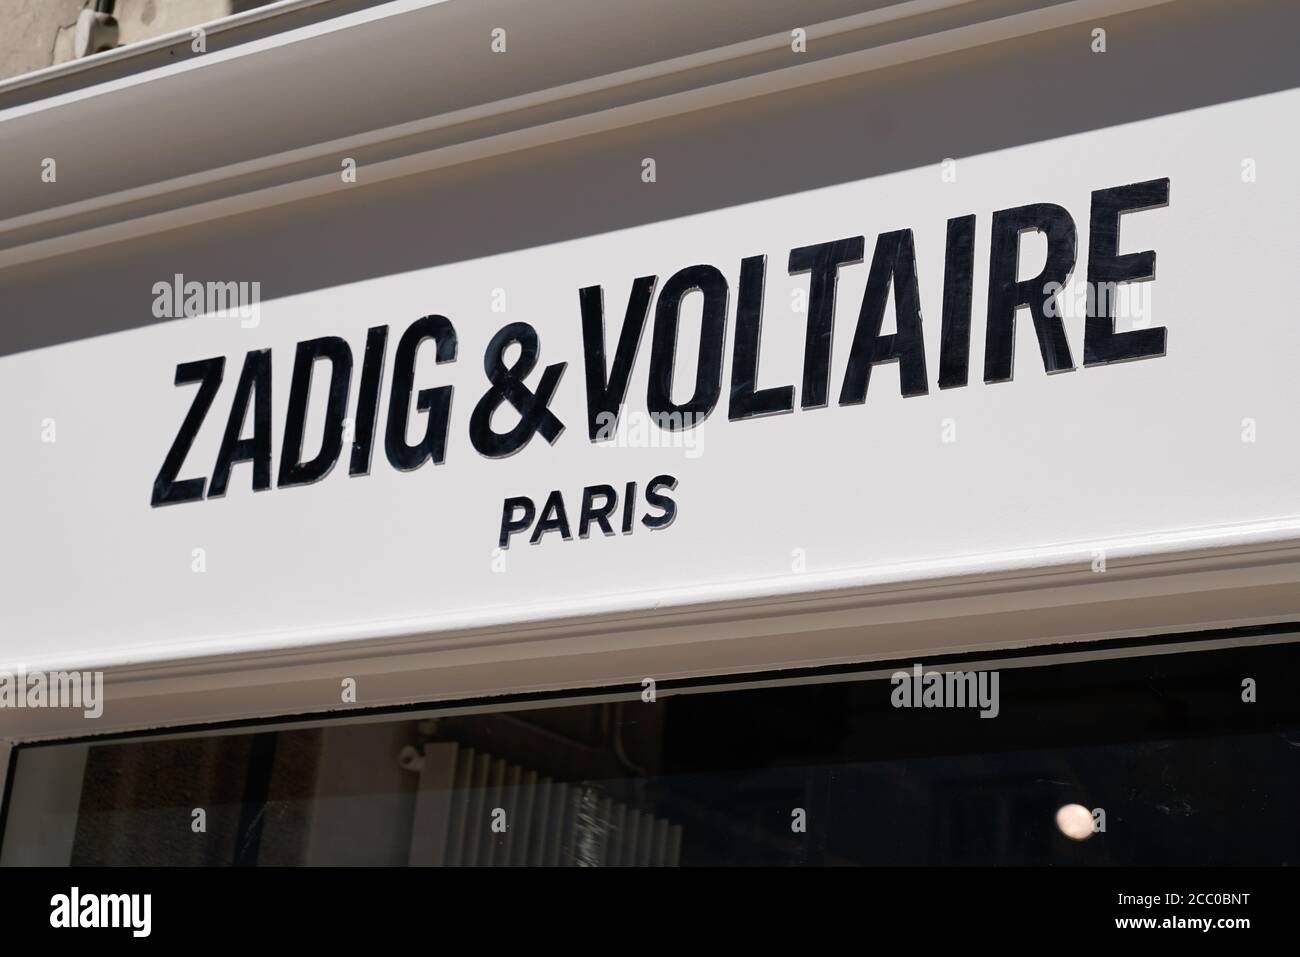 Bordeaux , Aquitaine / France - 08 10 2020 : Zadig & Voltaire paris ...